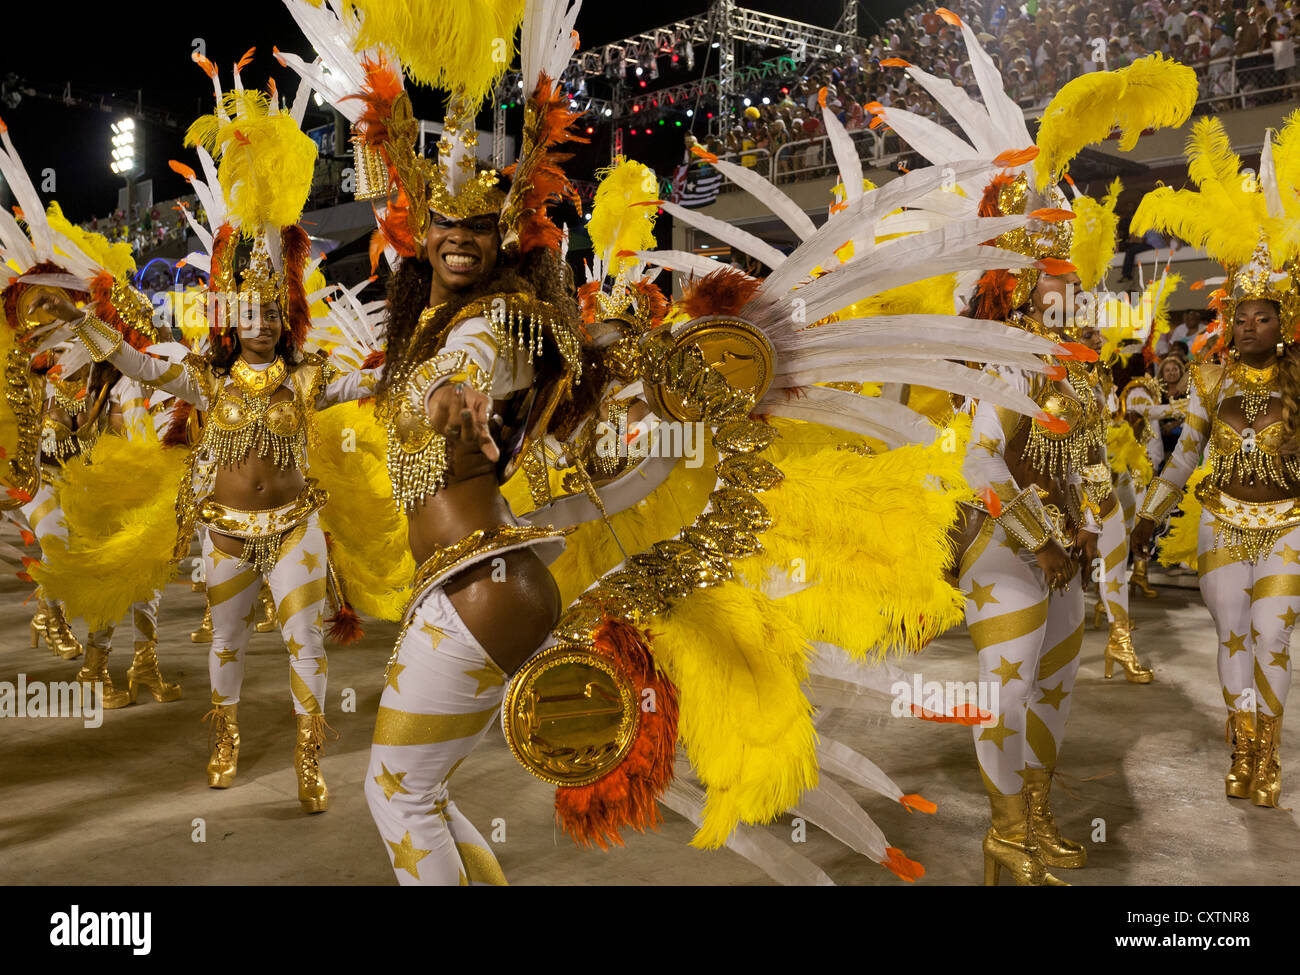 Young Woman Dancing During Carnival Rio de Janeiro Brazil Stock Photo